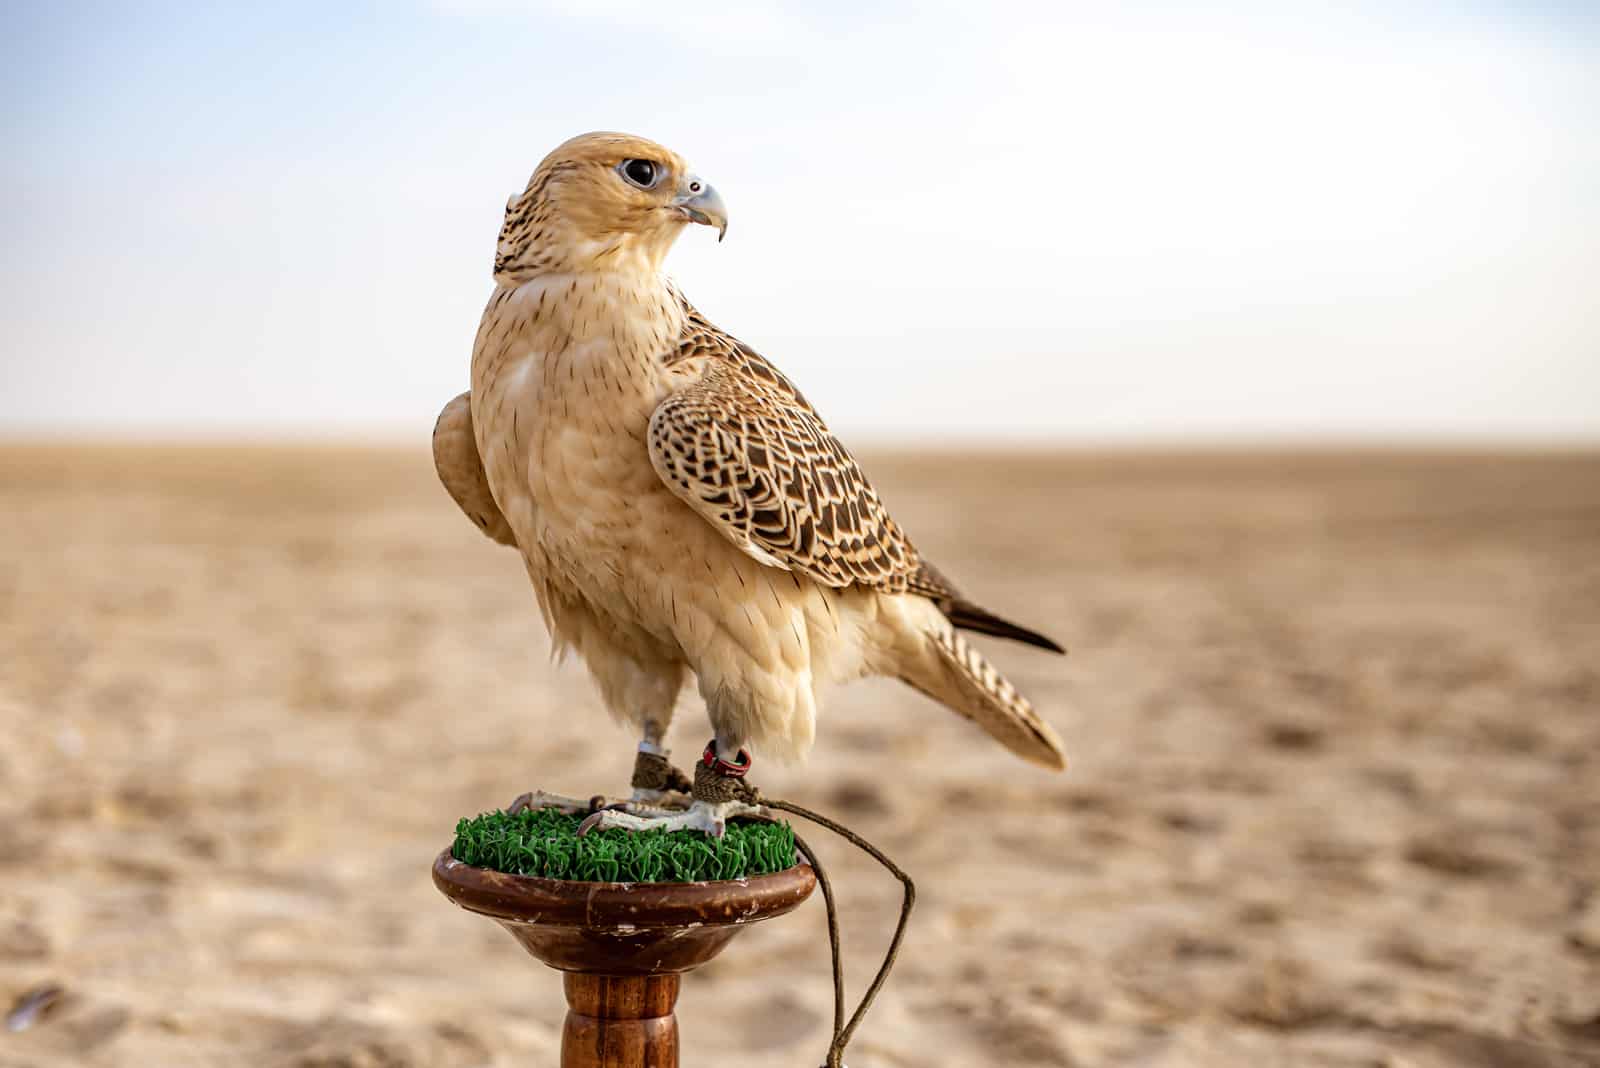 Falco nel deserto che guarda lontano